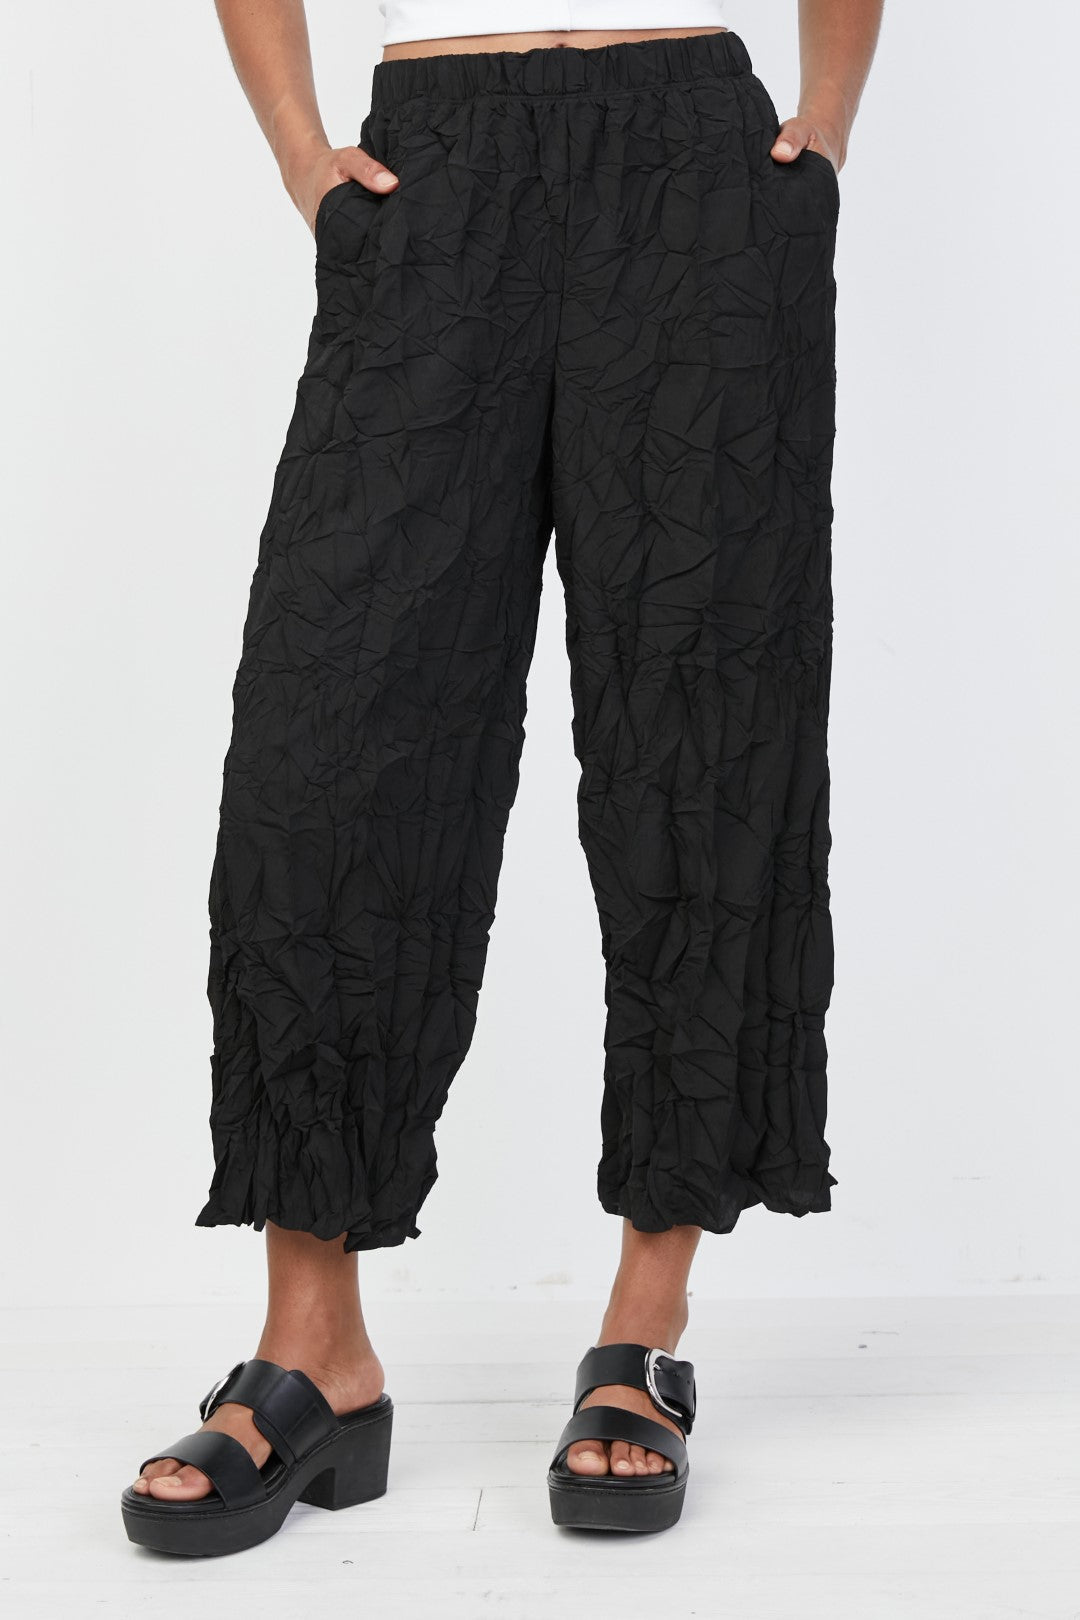 Black Crinkled Crop Pant